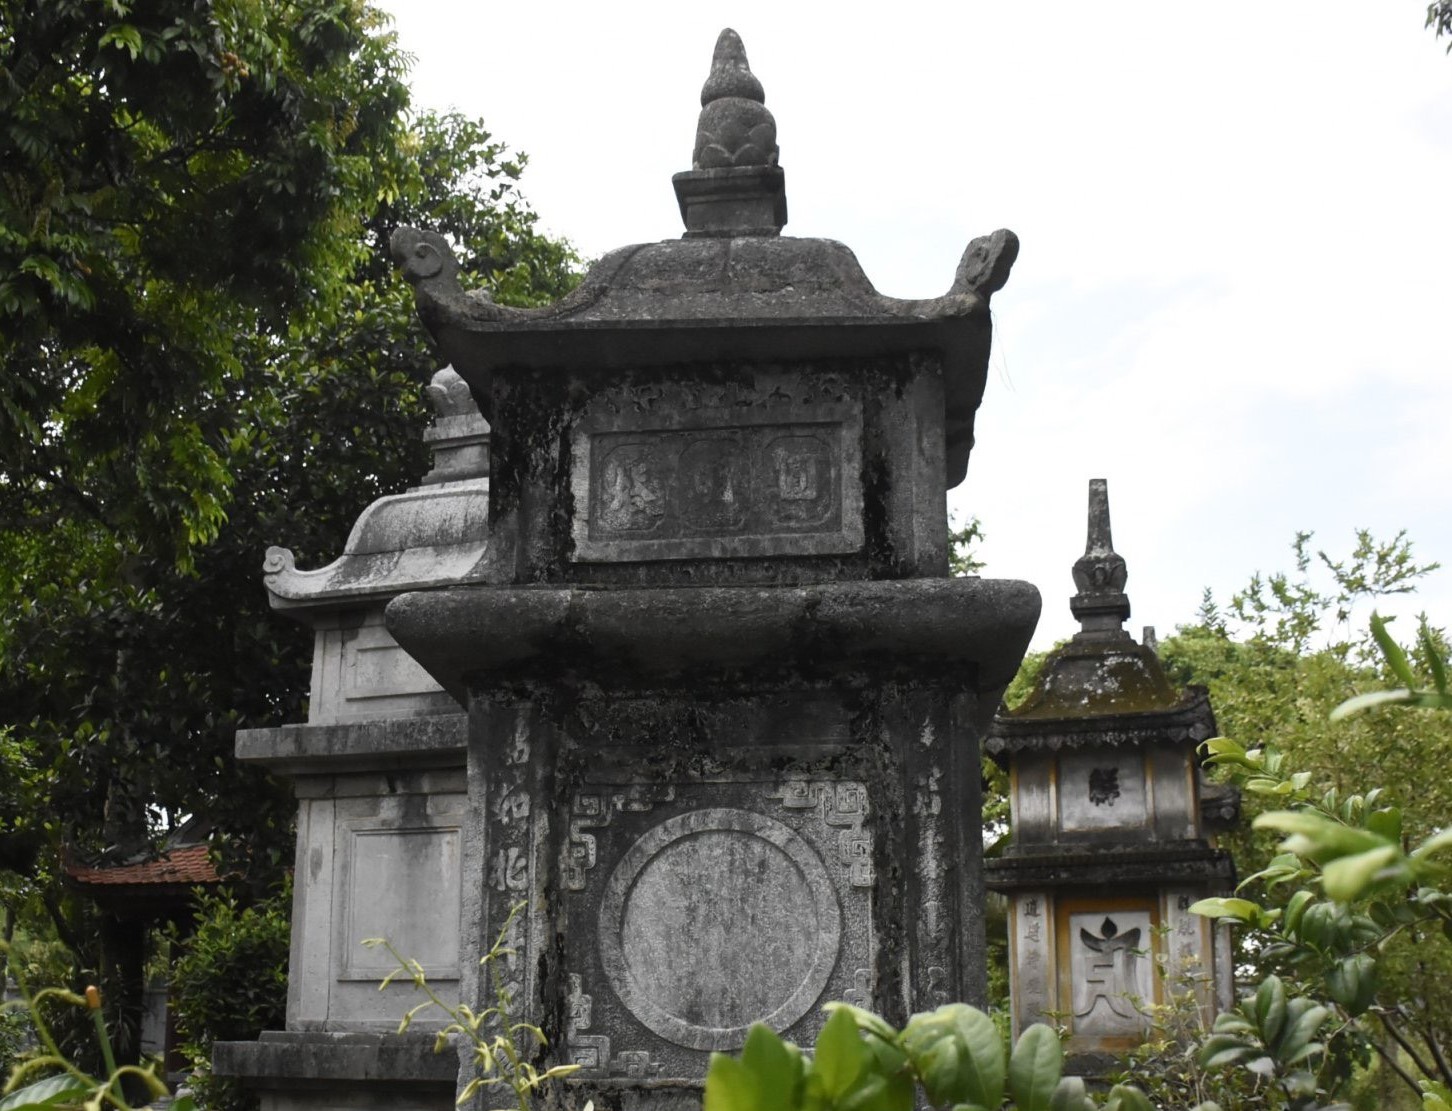 Các ngôi tháp ở chùa Muống chủ yếu là tháp đá thời Lê và thời Nguyễn. Trên nhiều ngôi tháp còn lưu giữ nét kiến trúc độc đáo với hàng chữ cổ, hoa văn chủ yếu là hình tượng hoa sen, đám mây. 